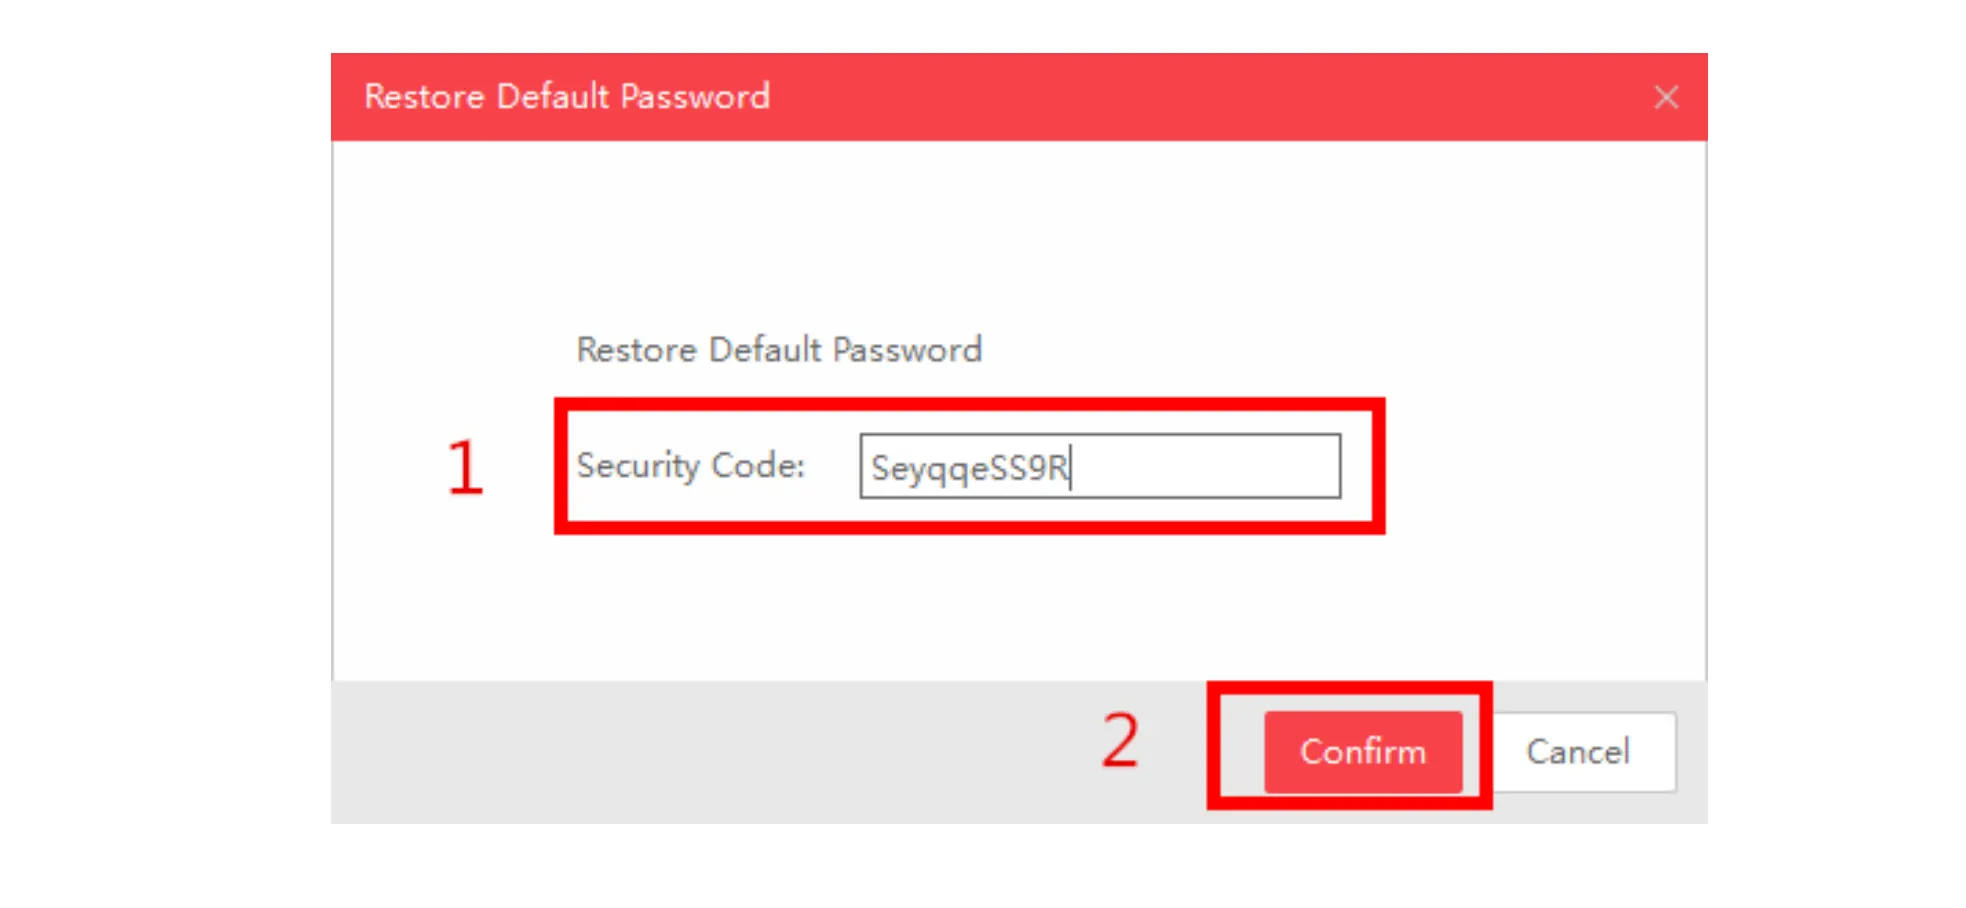 hikvision ip camera default password